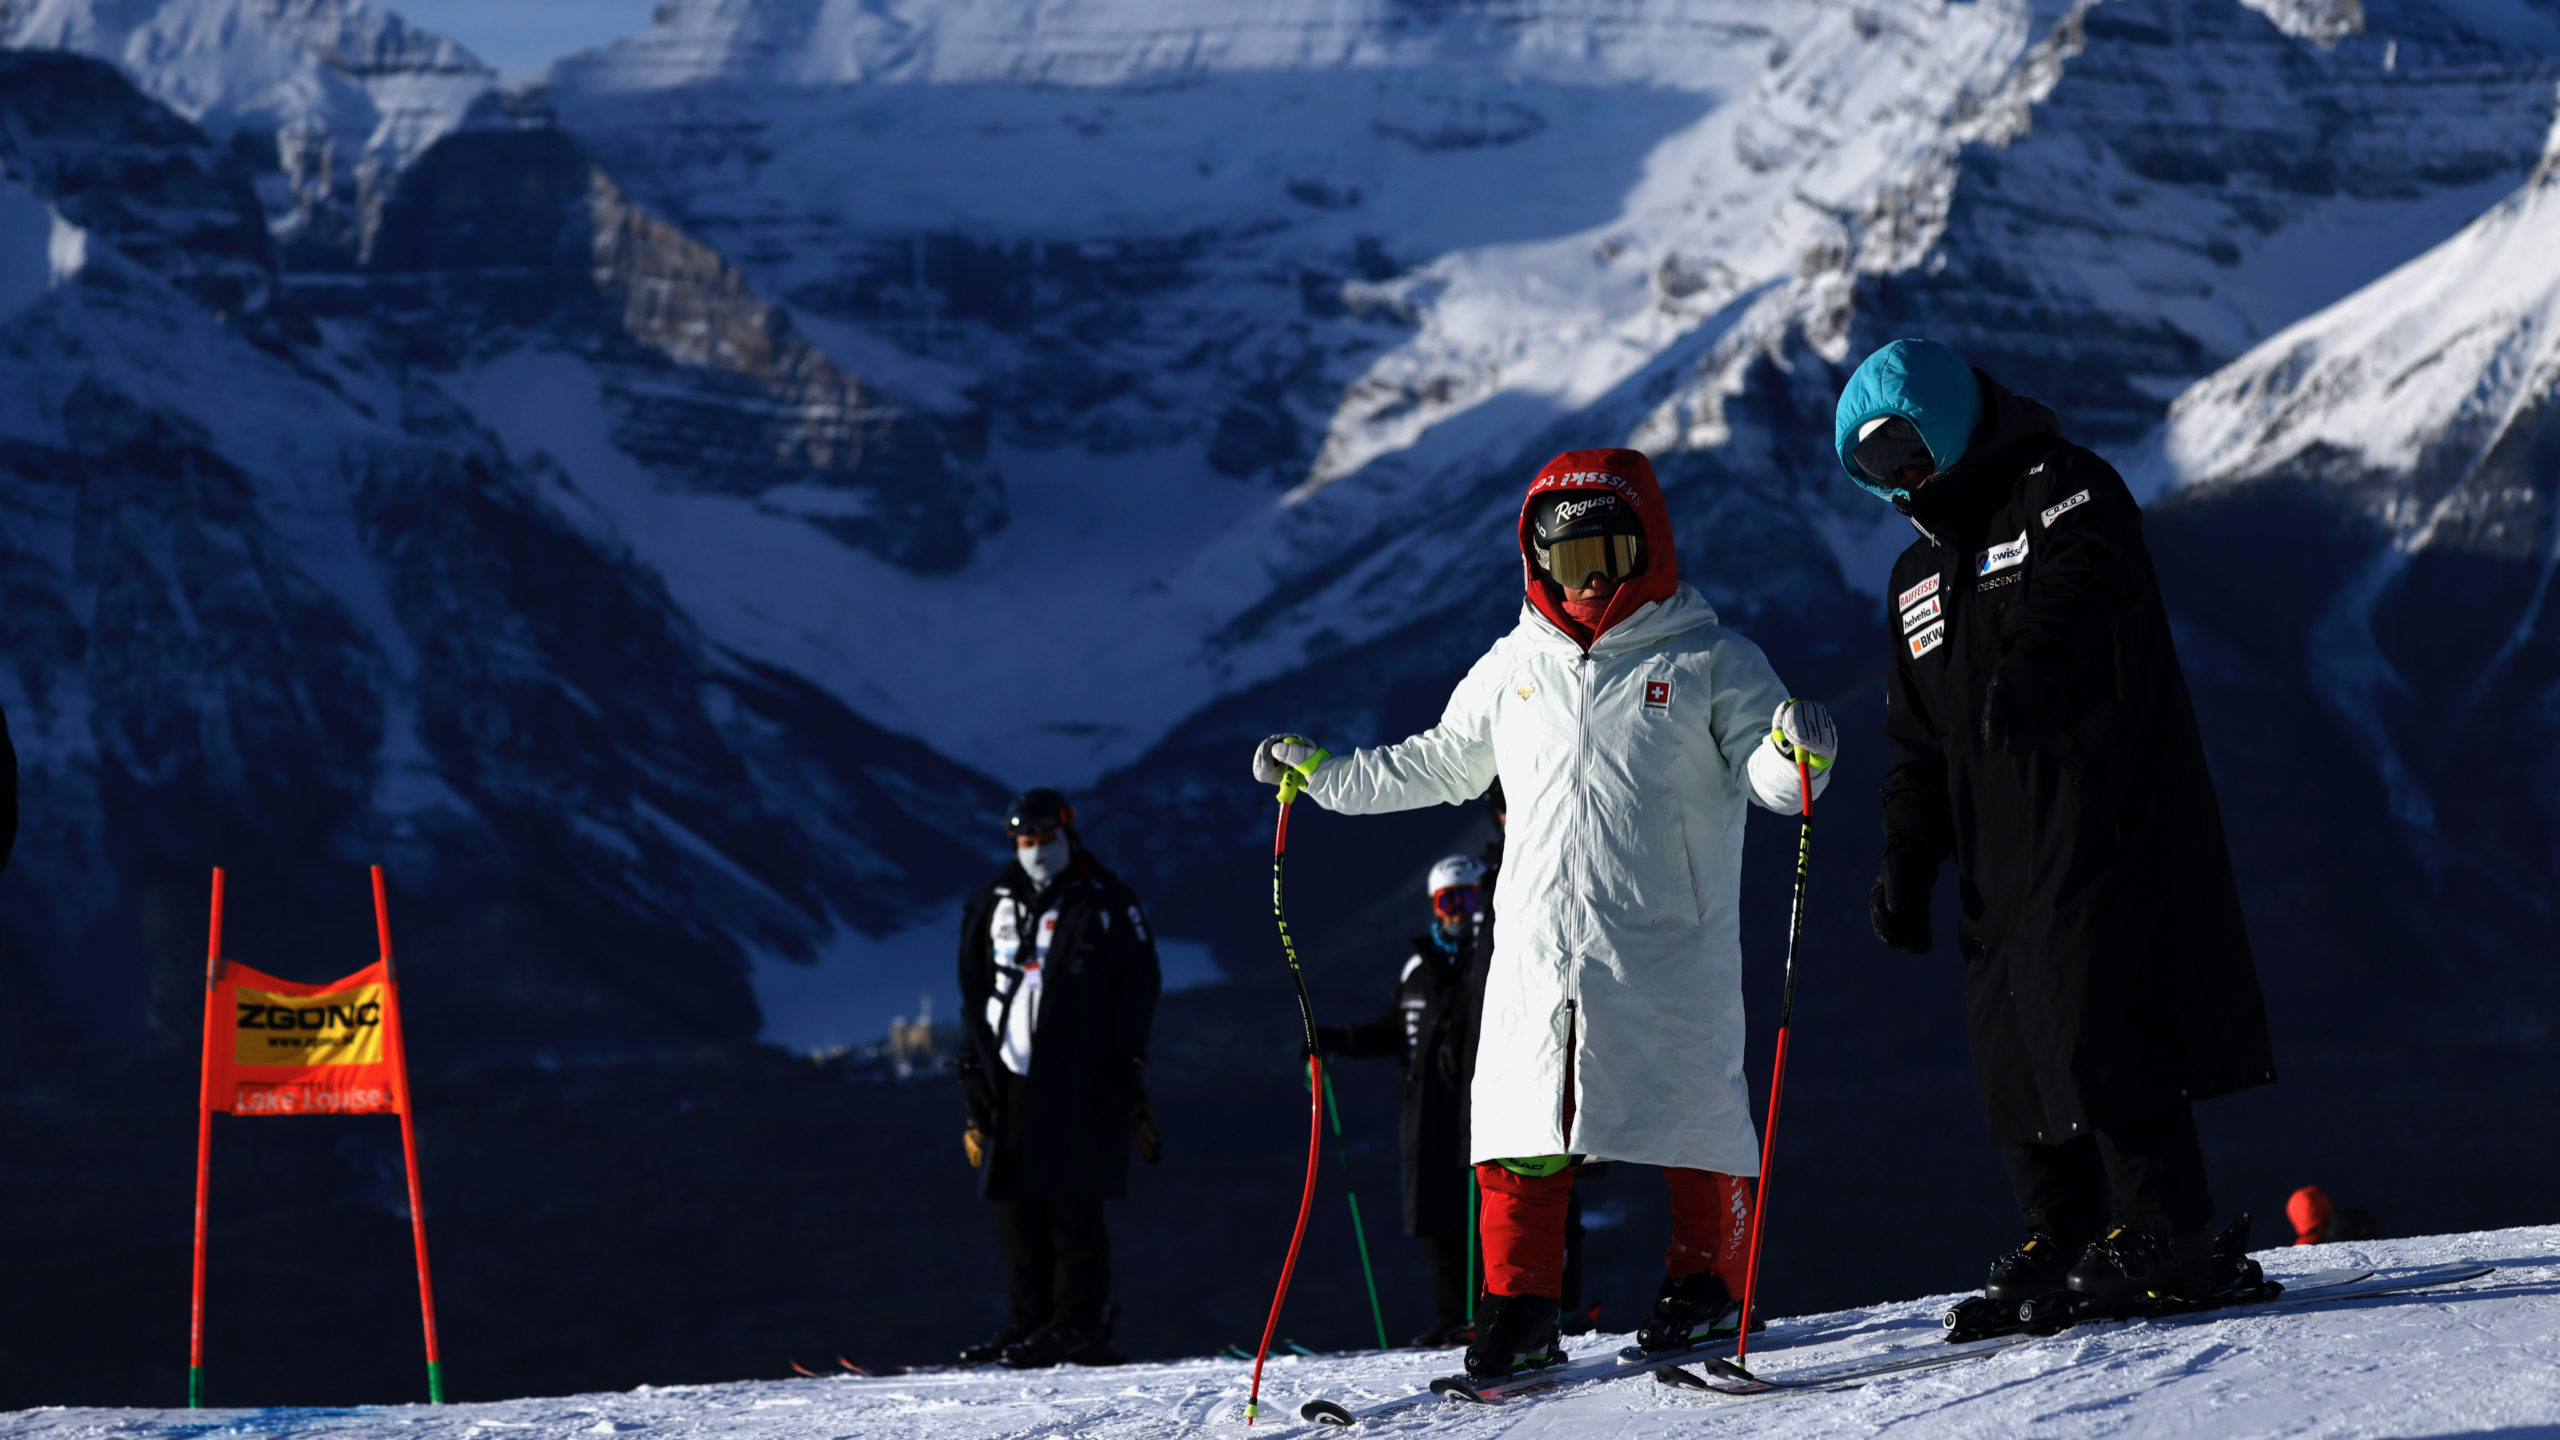 Par -30°C, le ski passe en mode "survie" | SkiActu.ch